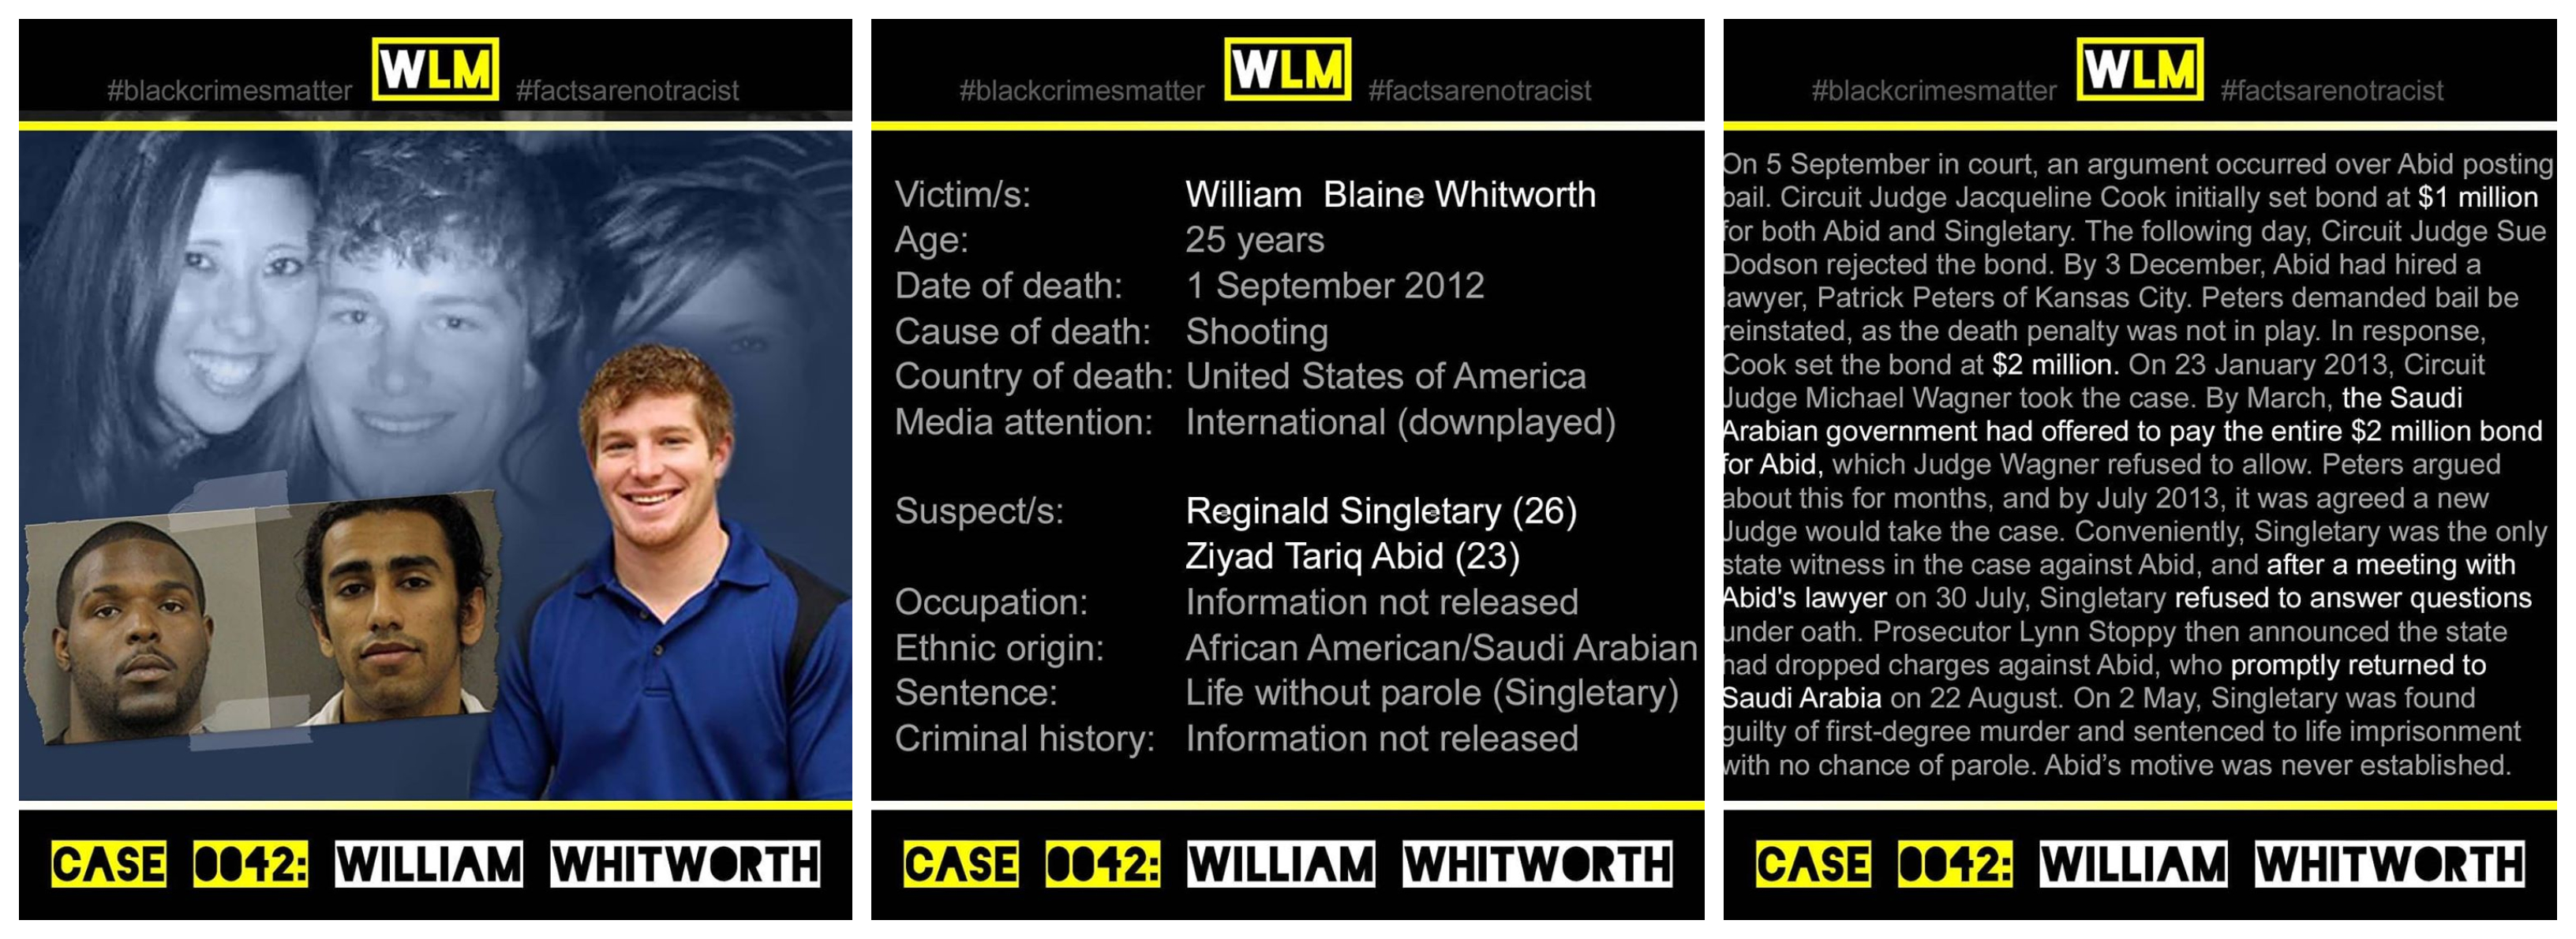 case-042-william-whitworth